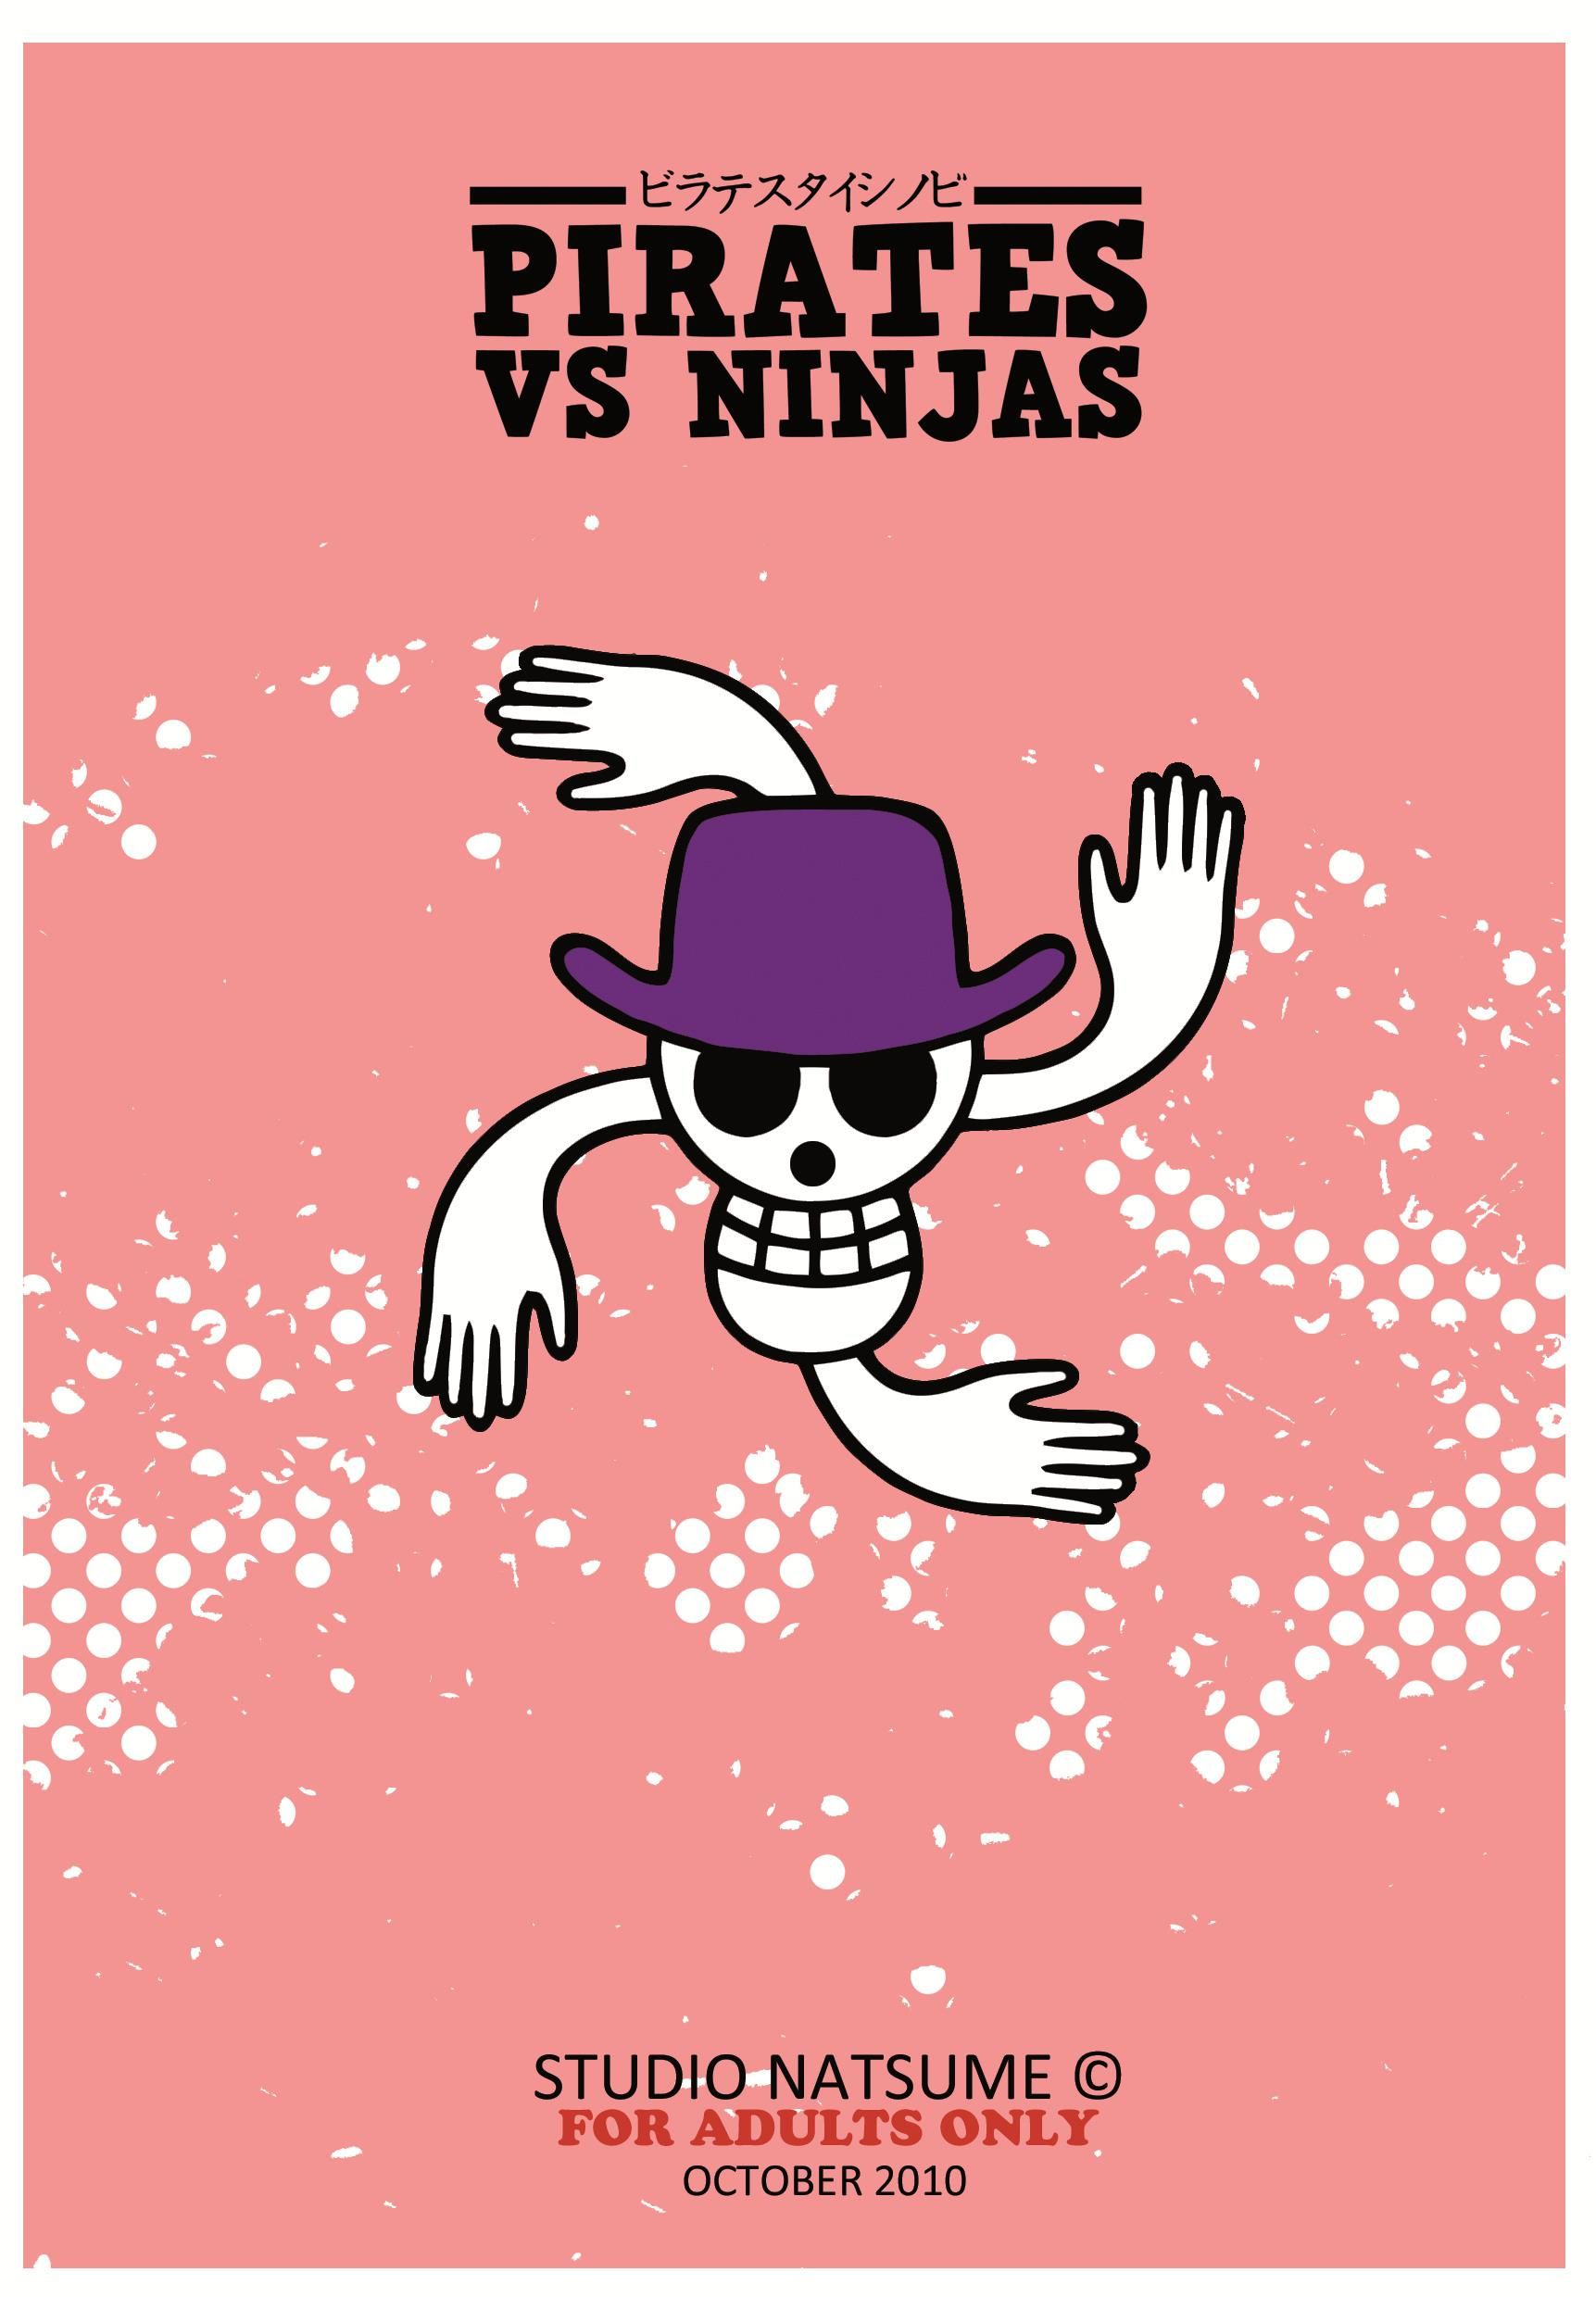 Piratas vs Ninjas (63)